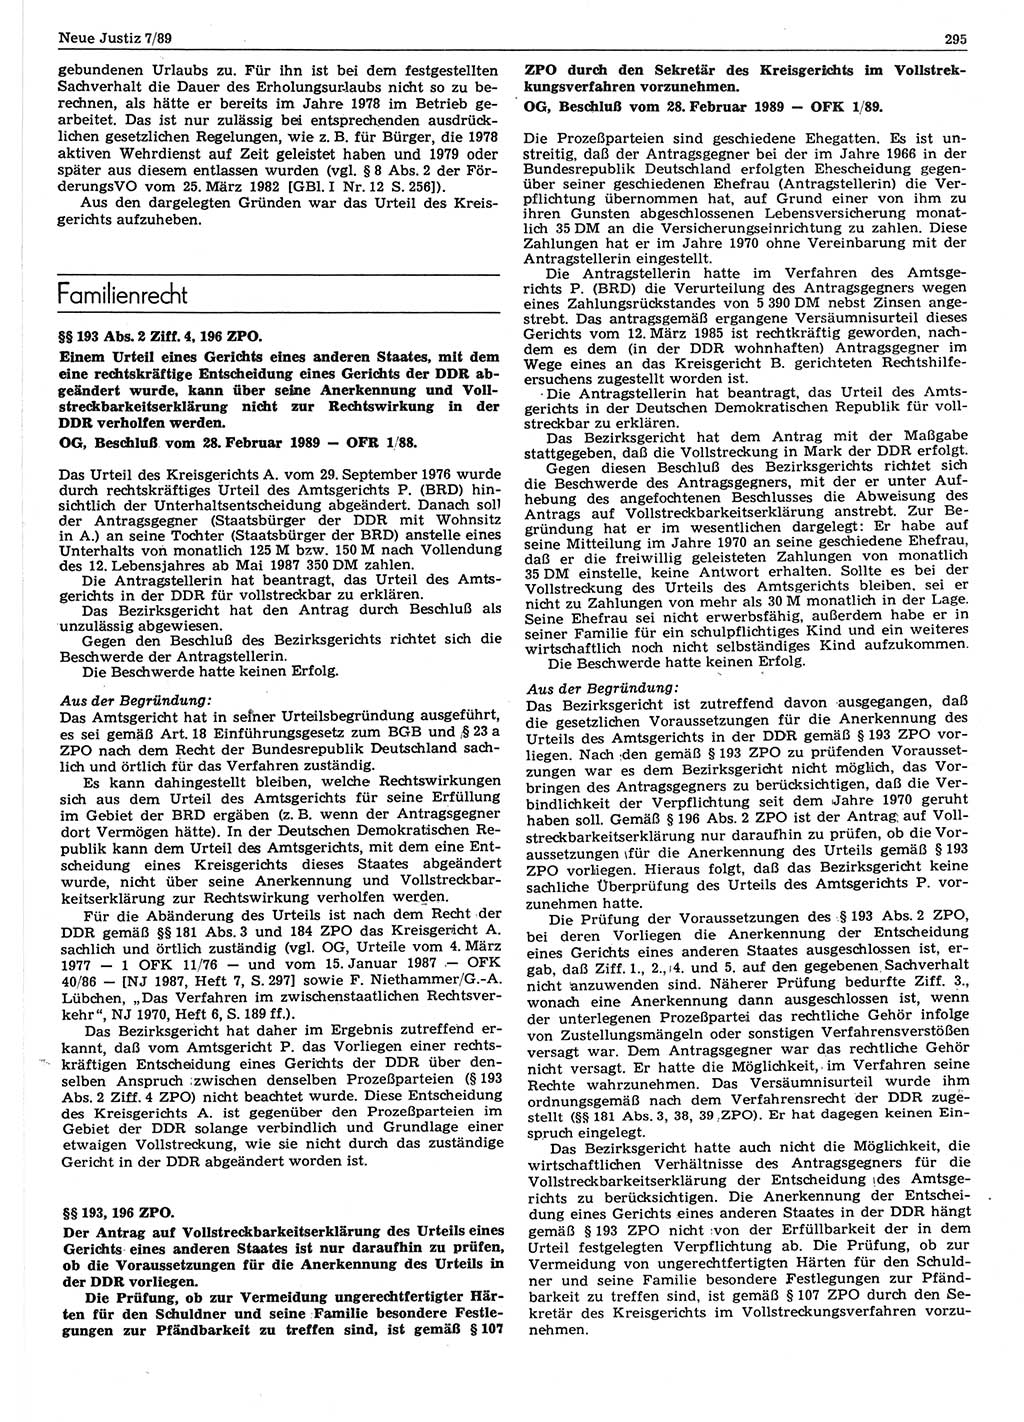 Neue Justiz (NJ), Zeitschrift für sozialistisches Recht und Gesetzlichkeit [Deutsche Demokratische Republik (DDR)], 43. Jahrgang 1989, Seite 295 (NJ DDR 1989, S. 295)